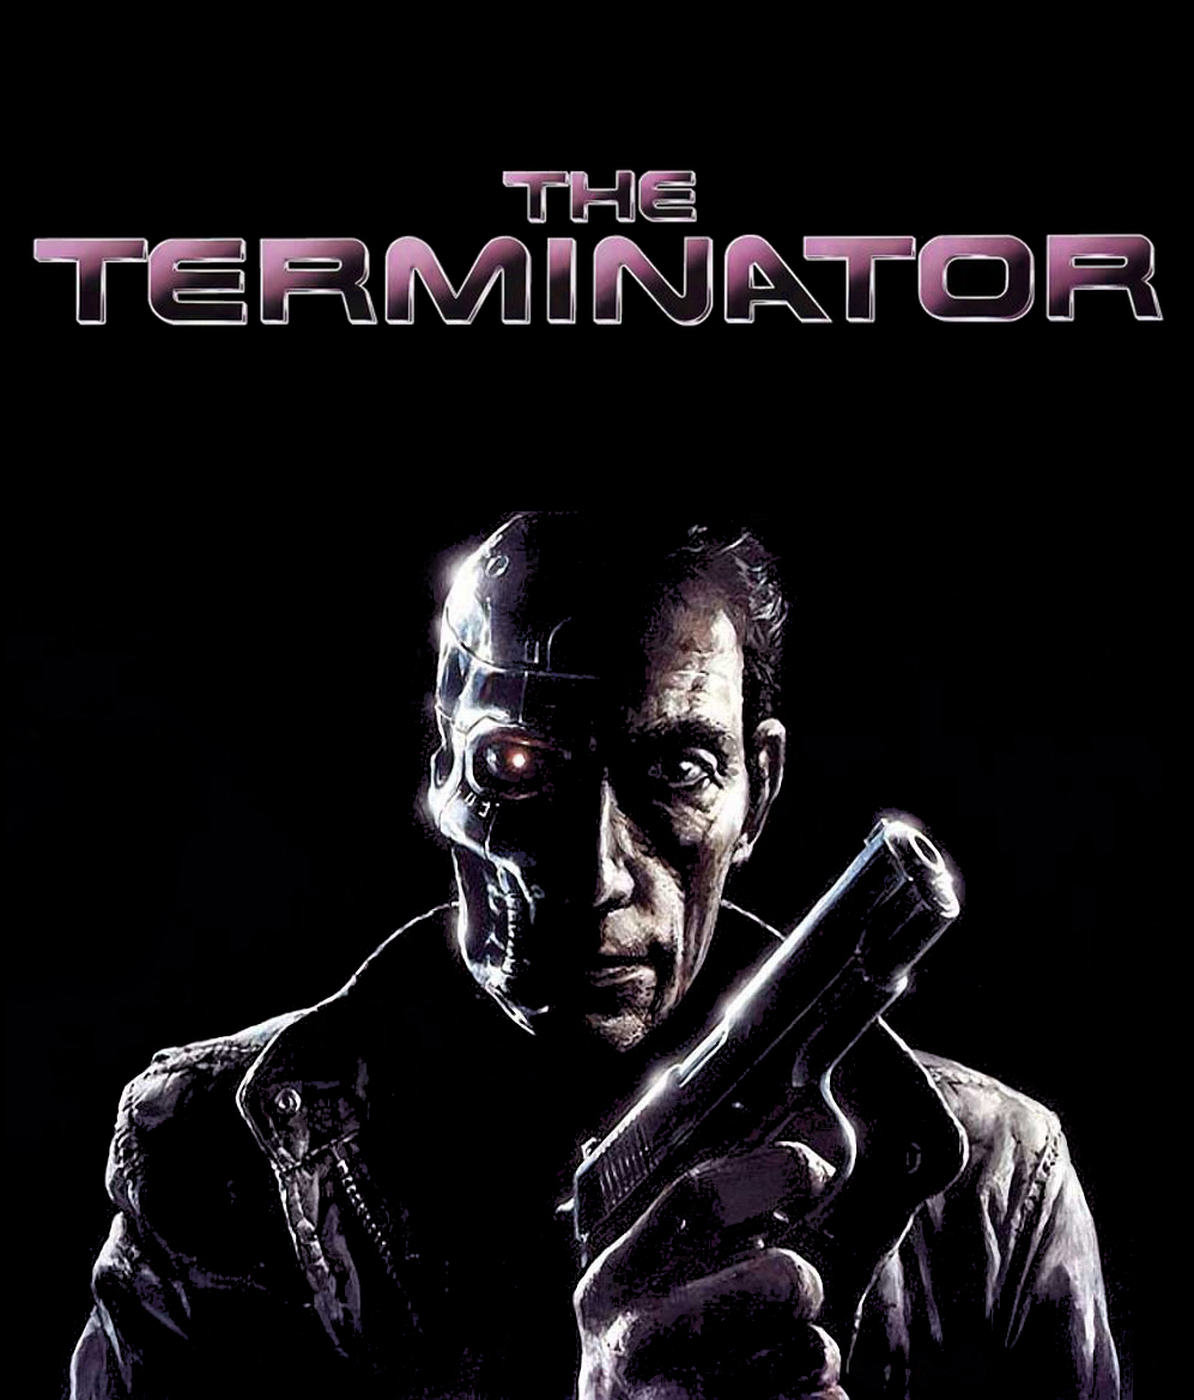 General 1194x1400 Terminator movie poster black background gun pistol artwork movies